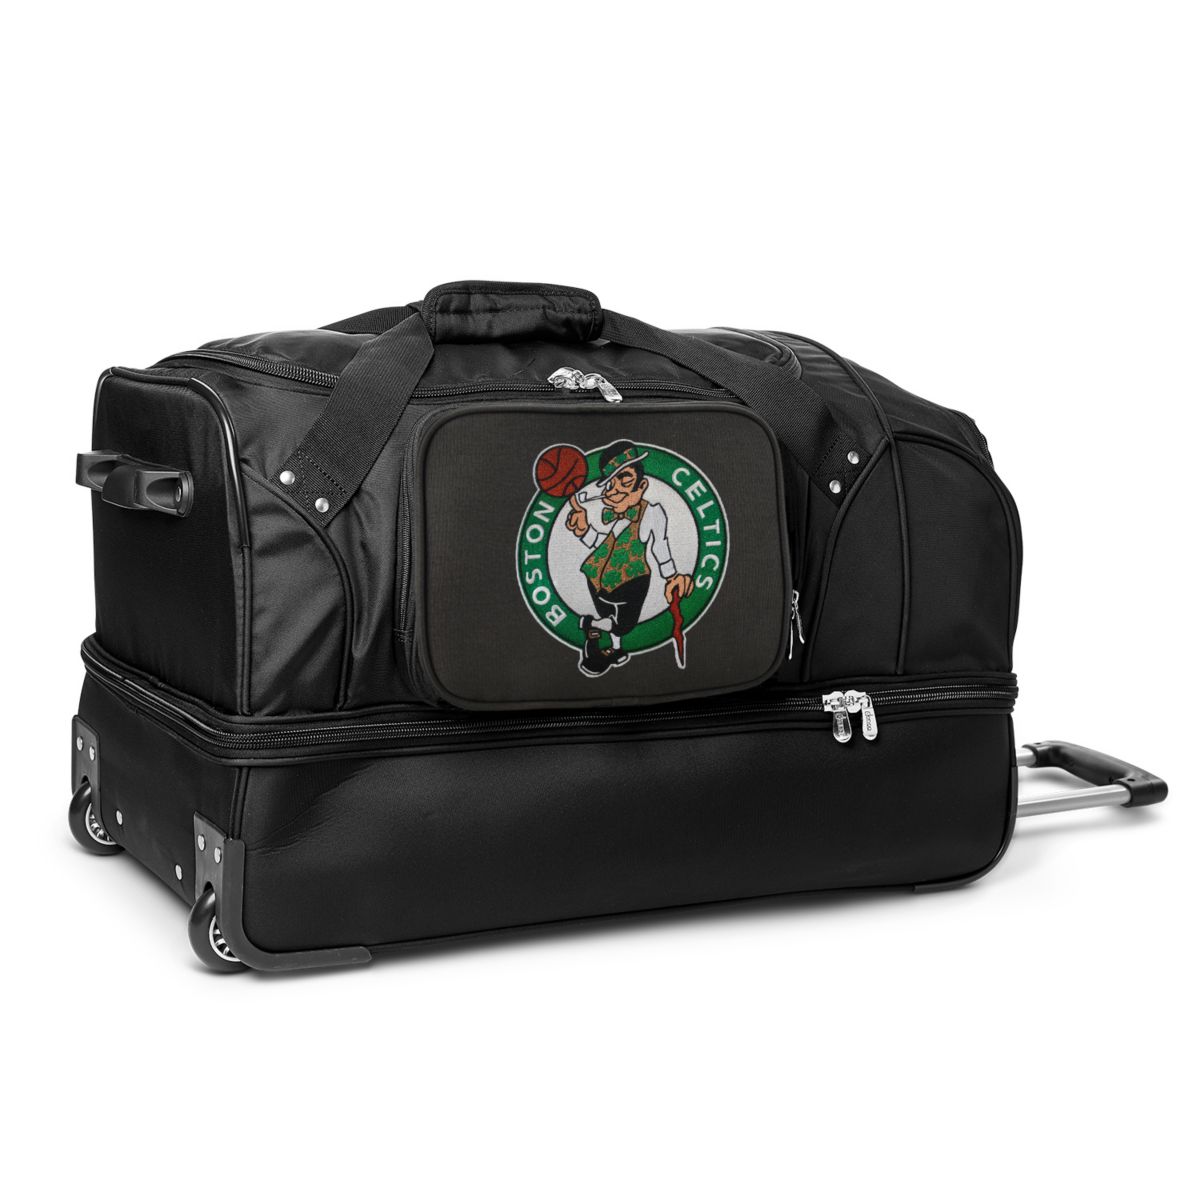 27-дюймовая спортивная сумка Boston Celtics на колесиках Denco